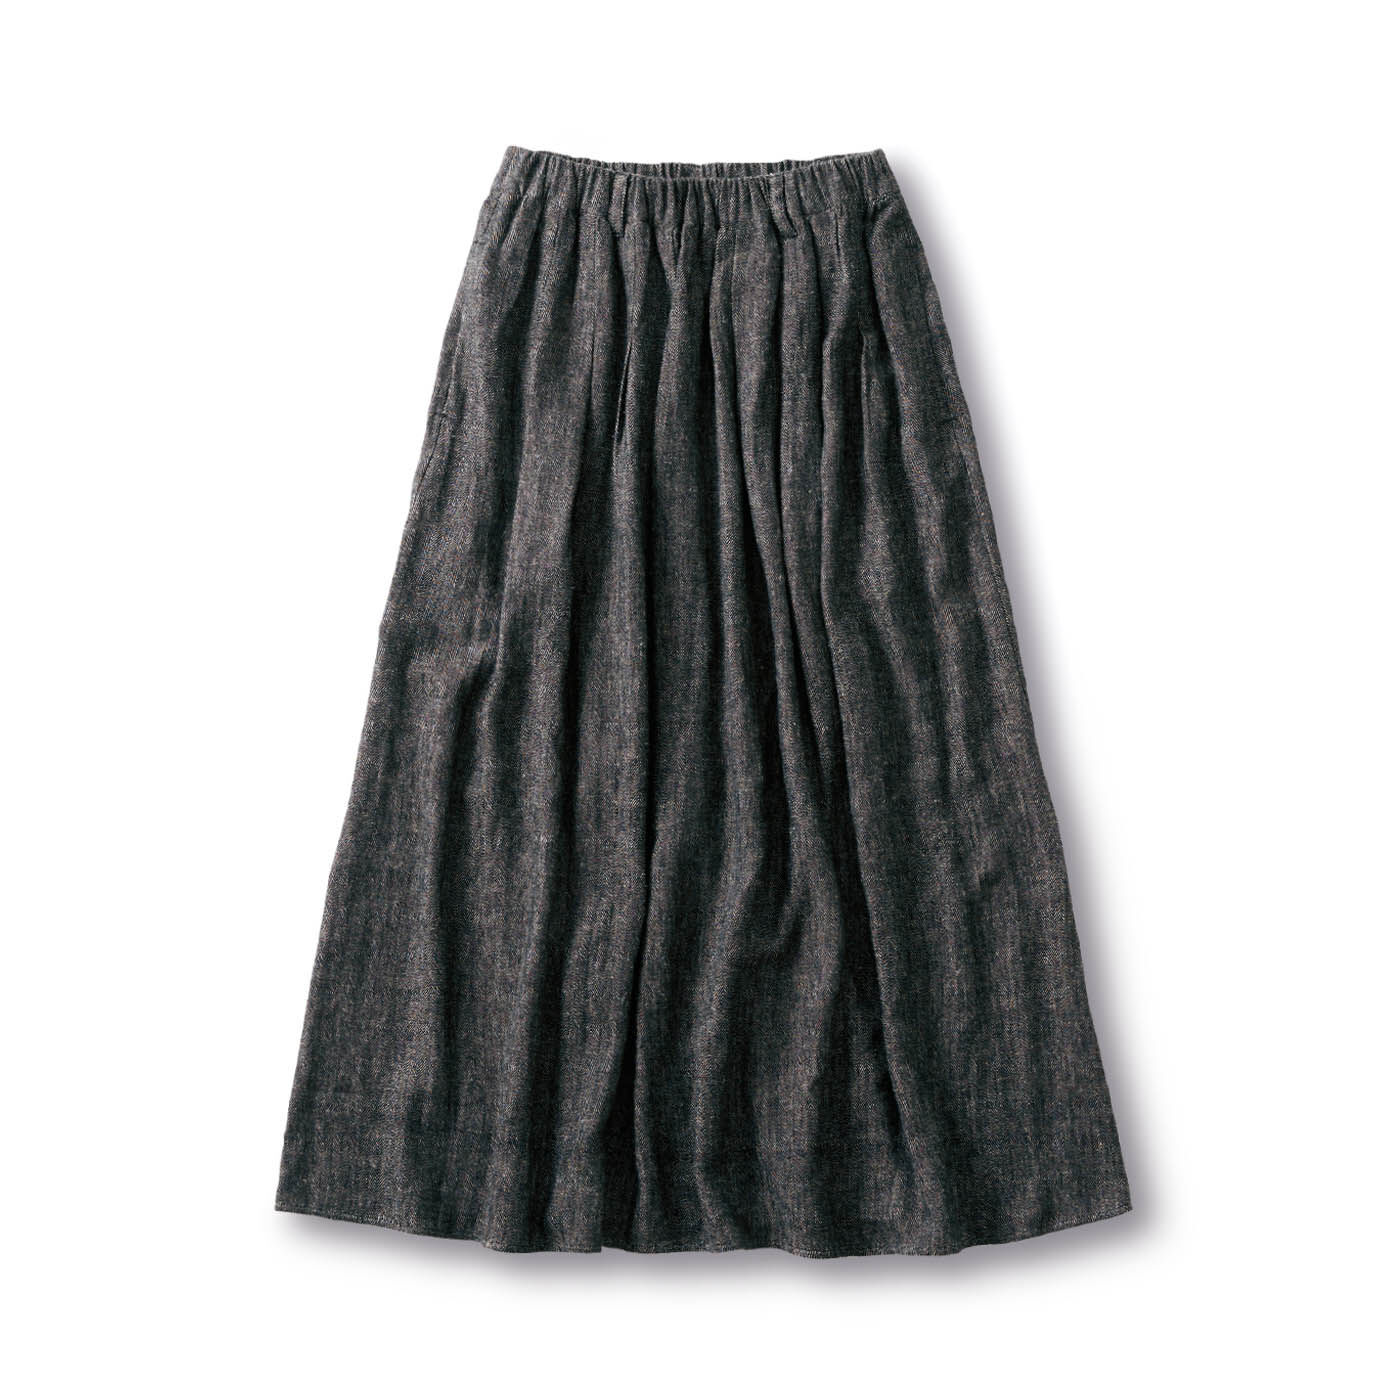 ａｎｄ　ｍｙｅｒａ杉綾織りのギャザースカート